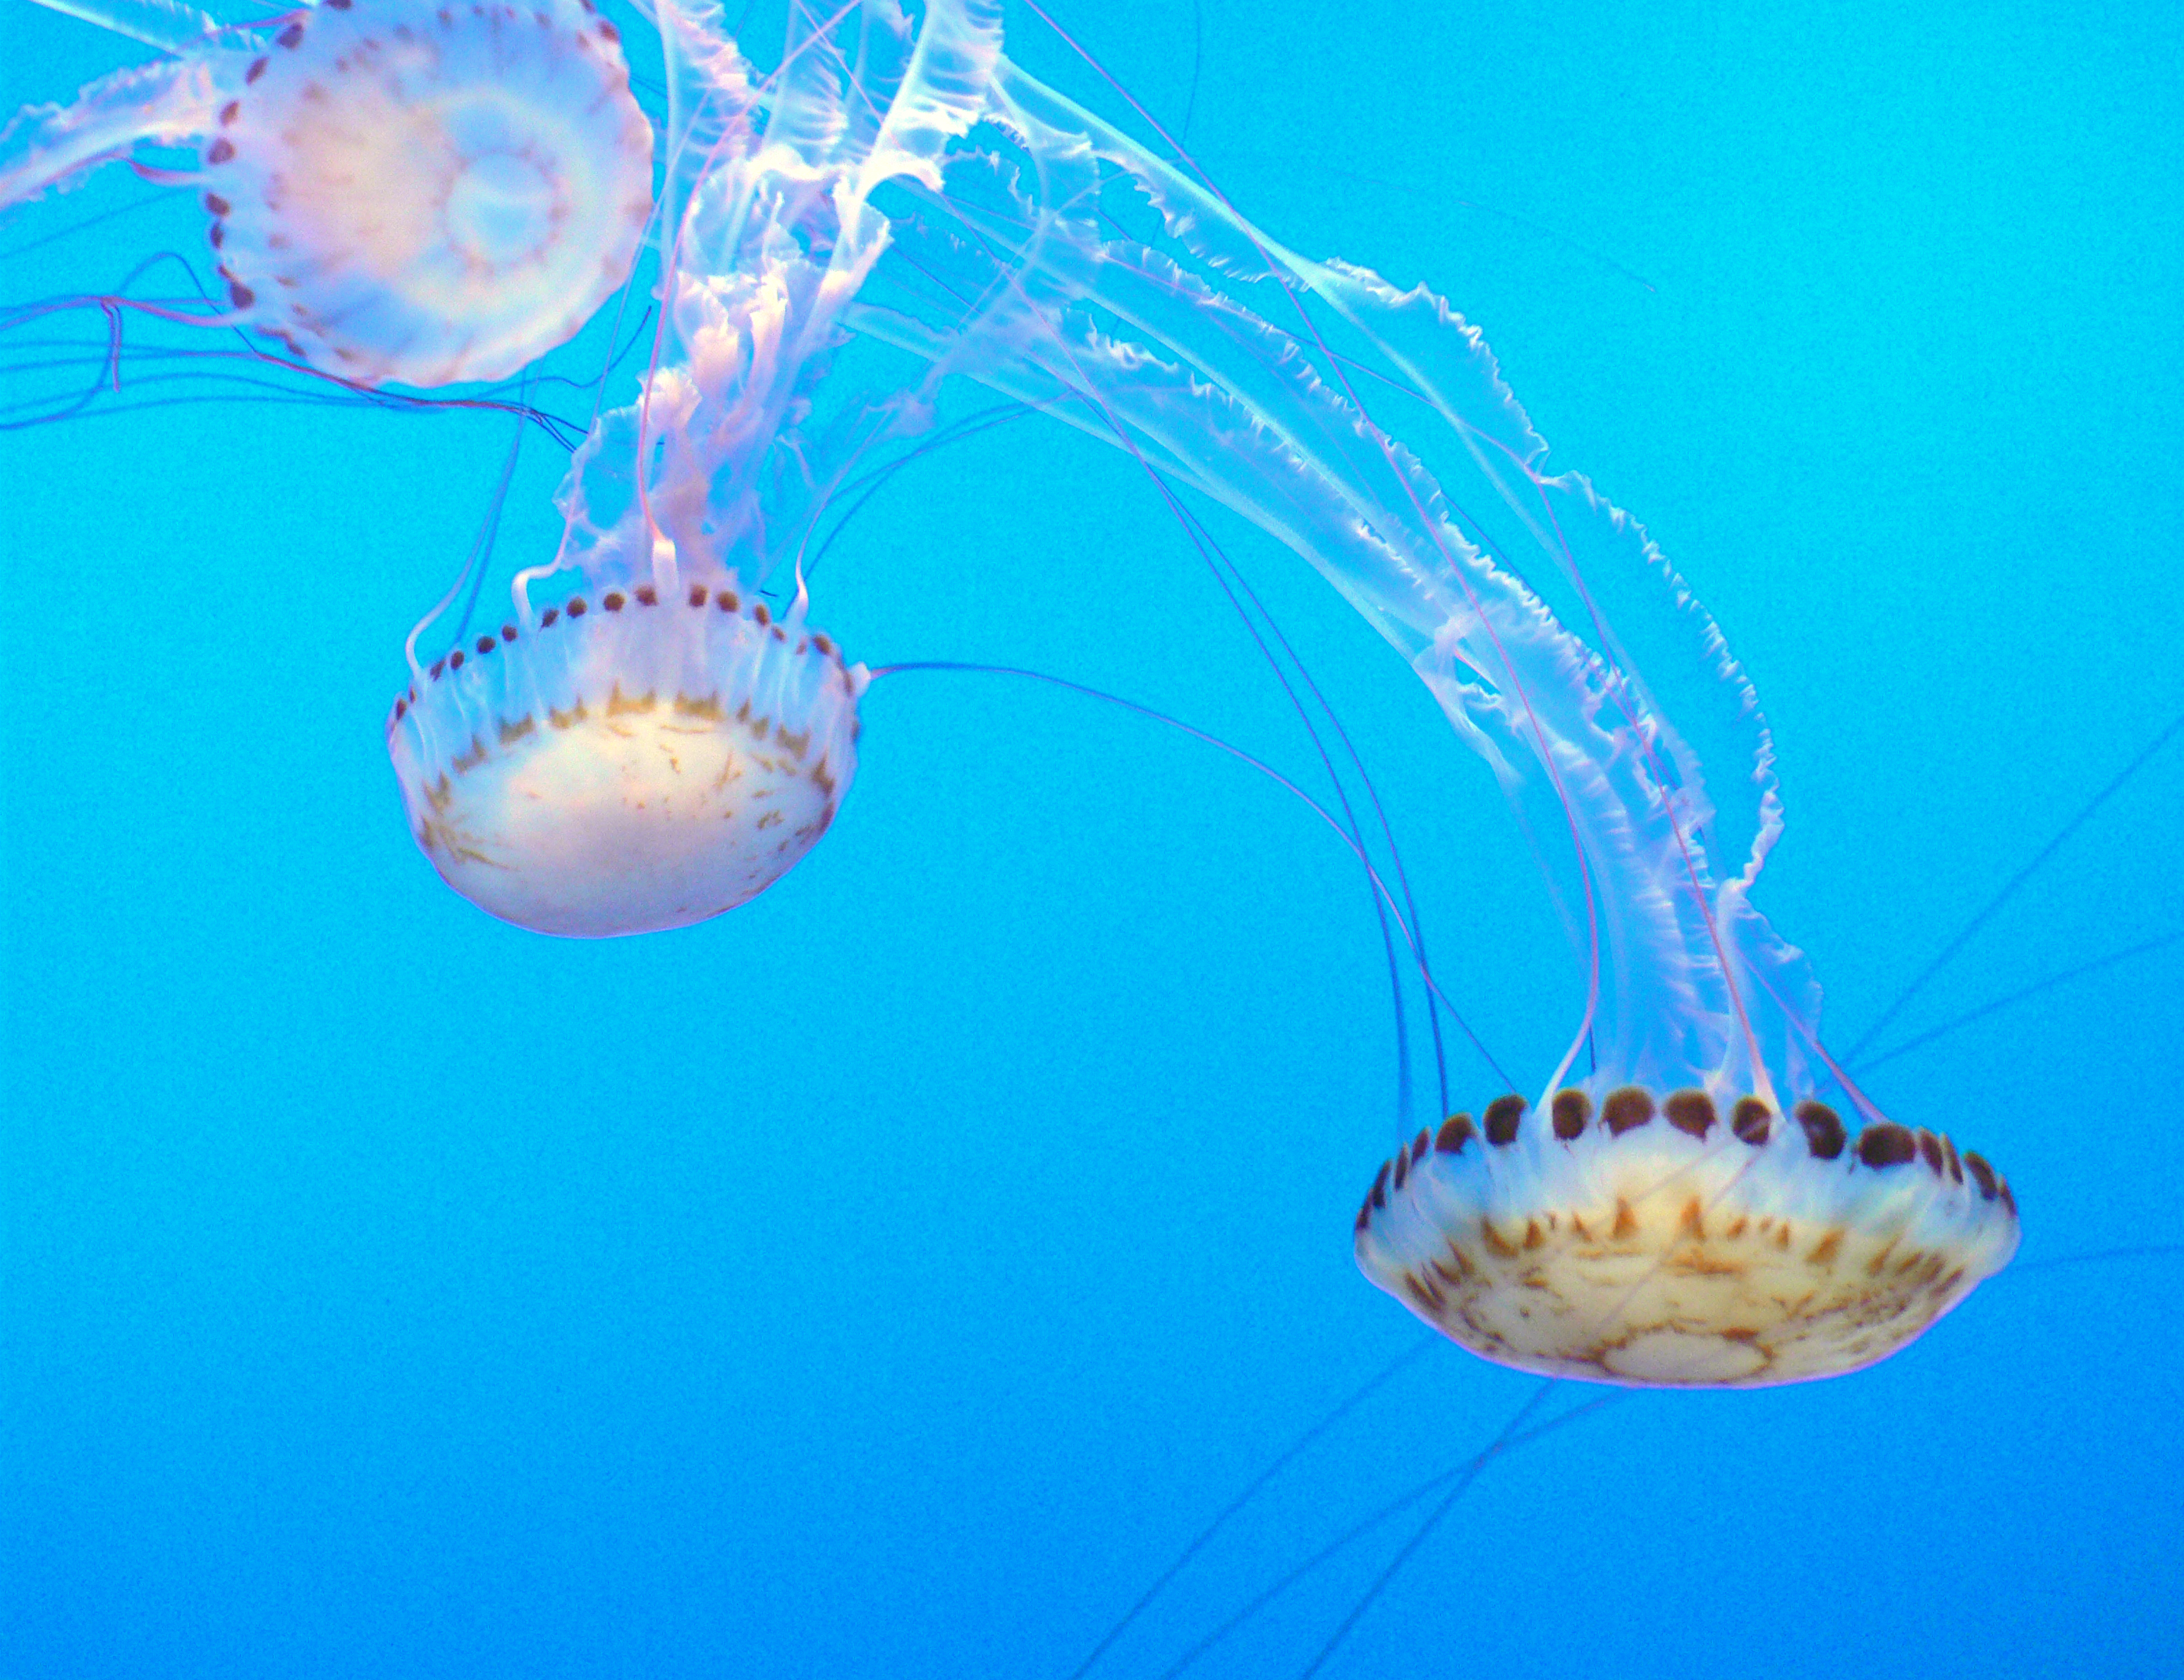 Monterey aquarium. jelly fish photo